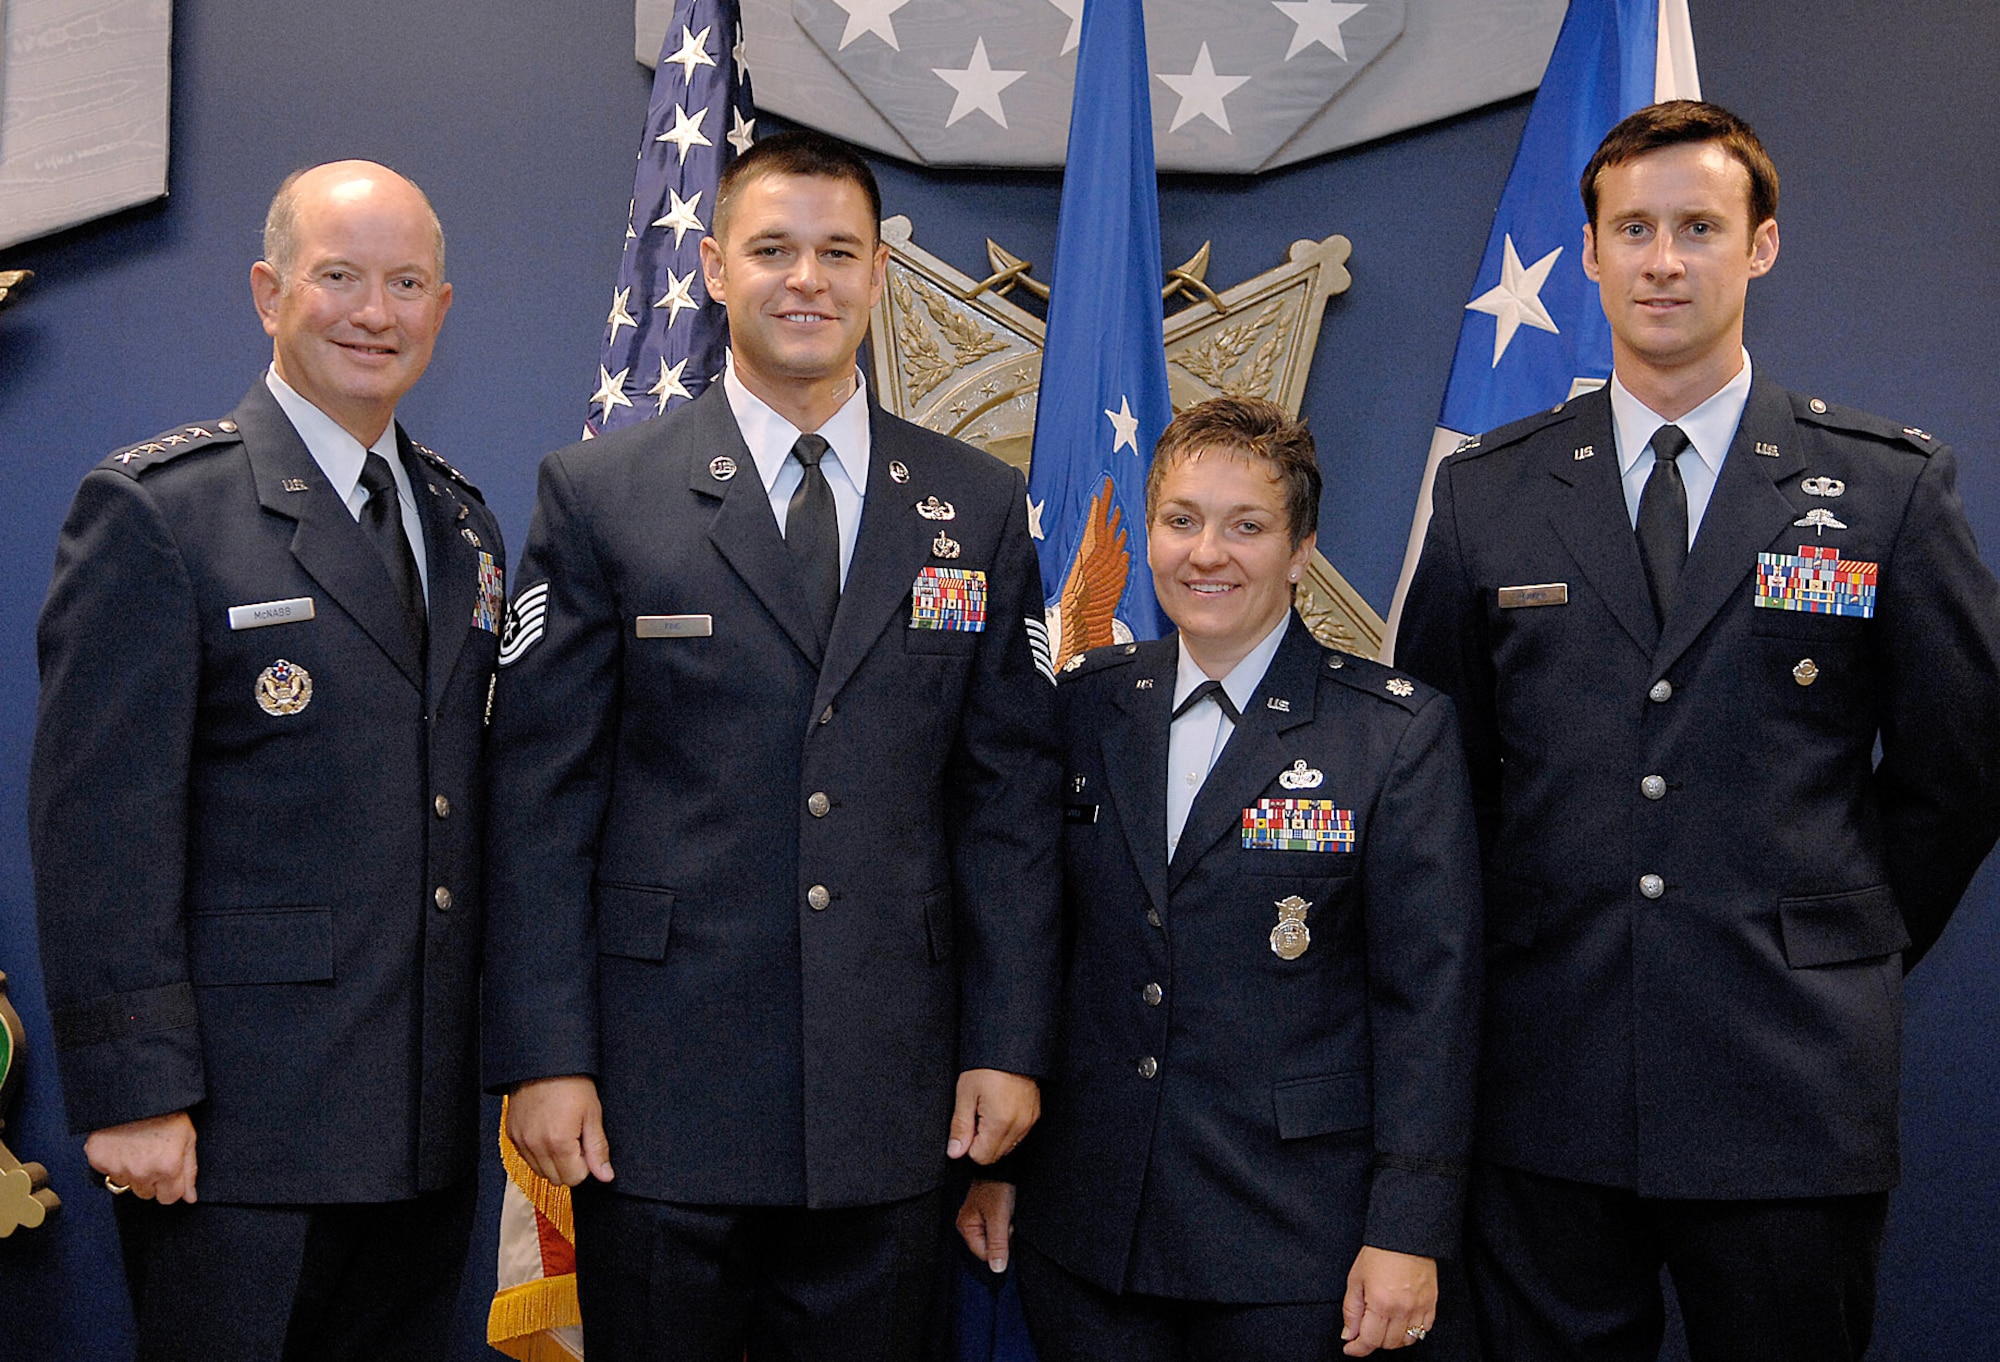 Airmen receive Sijan leadership award > Air Force > Article Display